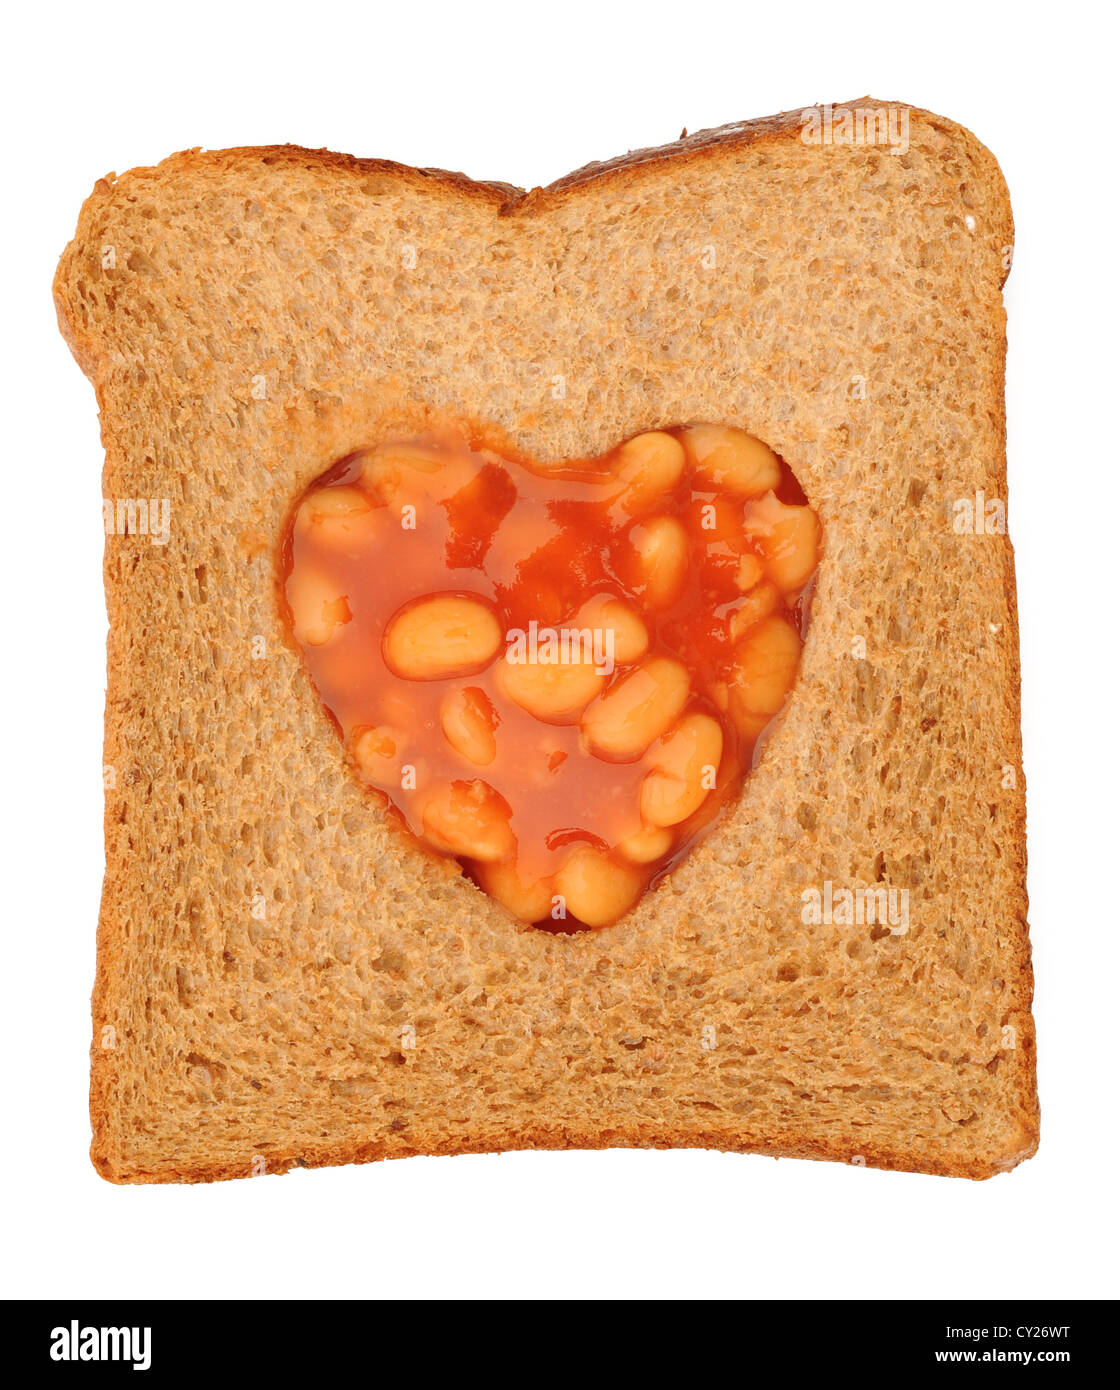 Love baked beans on toast Stock Photo